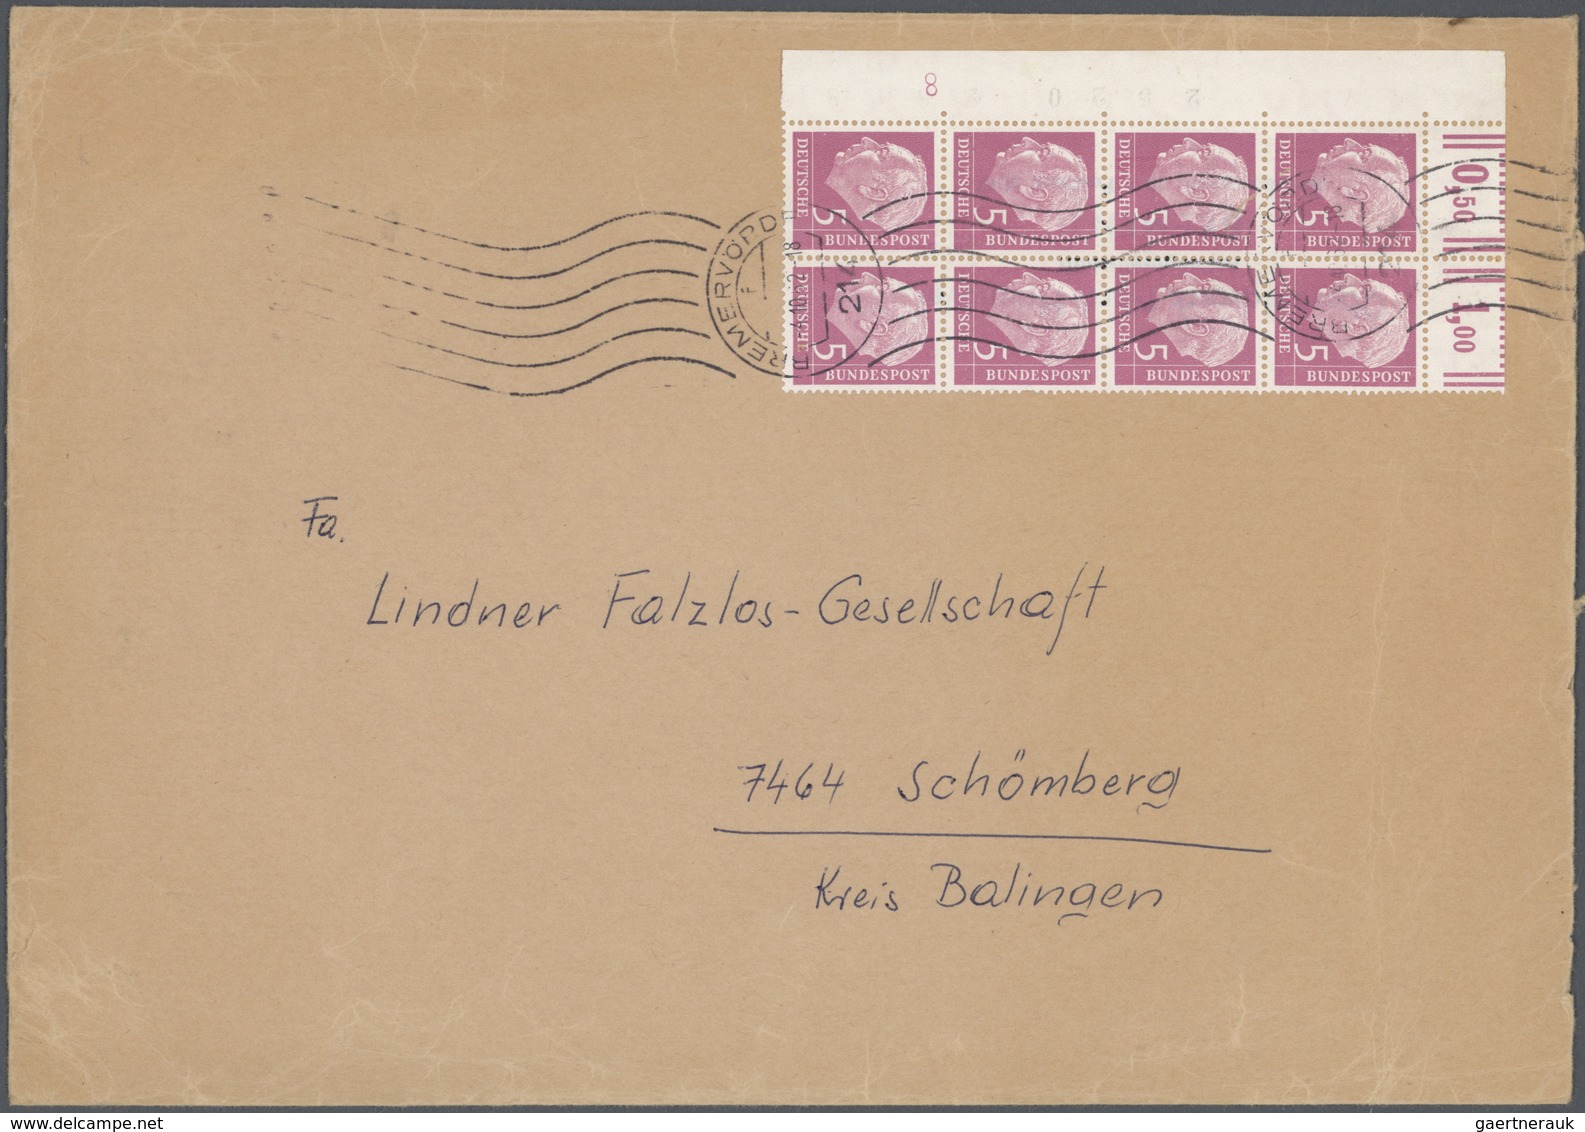 32169 Deutschland nach 1945: 1948/71, Plattennummern und Druckerzeichen - Sammlung der Dauerserien postfri